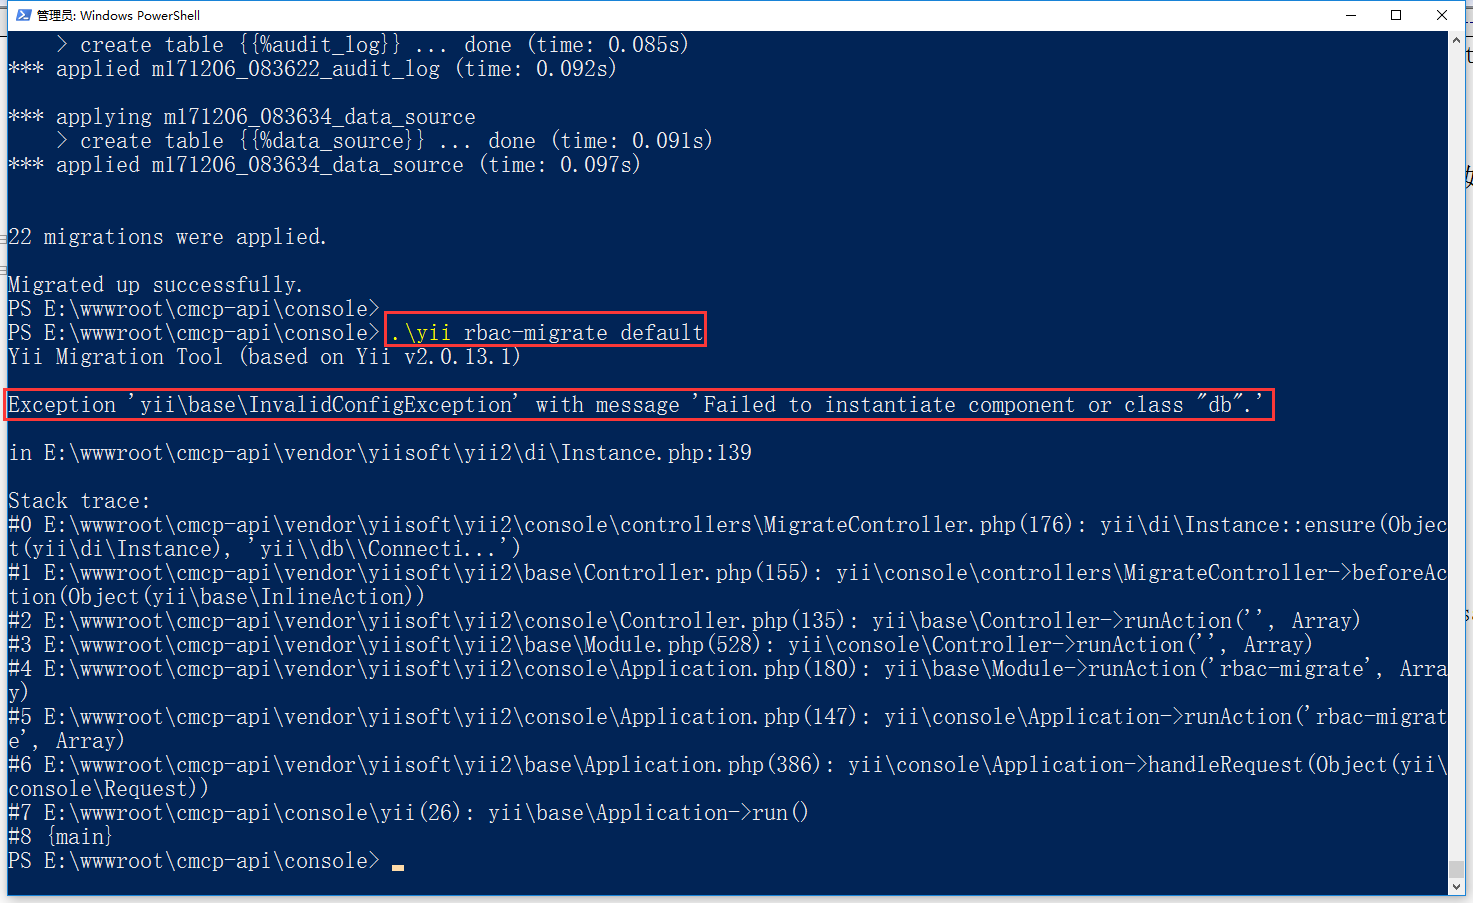 继续运行命令：.\yii rbac-migrate default，报错：Exception 'yii\base\InvalidConfigException' with message 'Failed to instantiate component or class "db".'